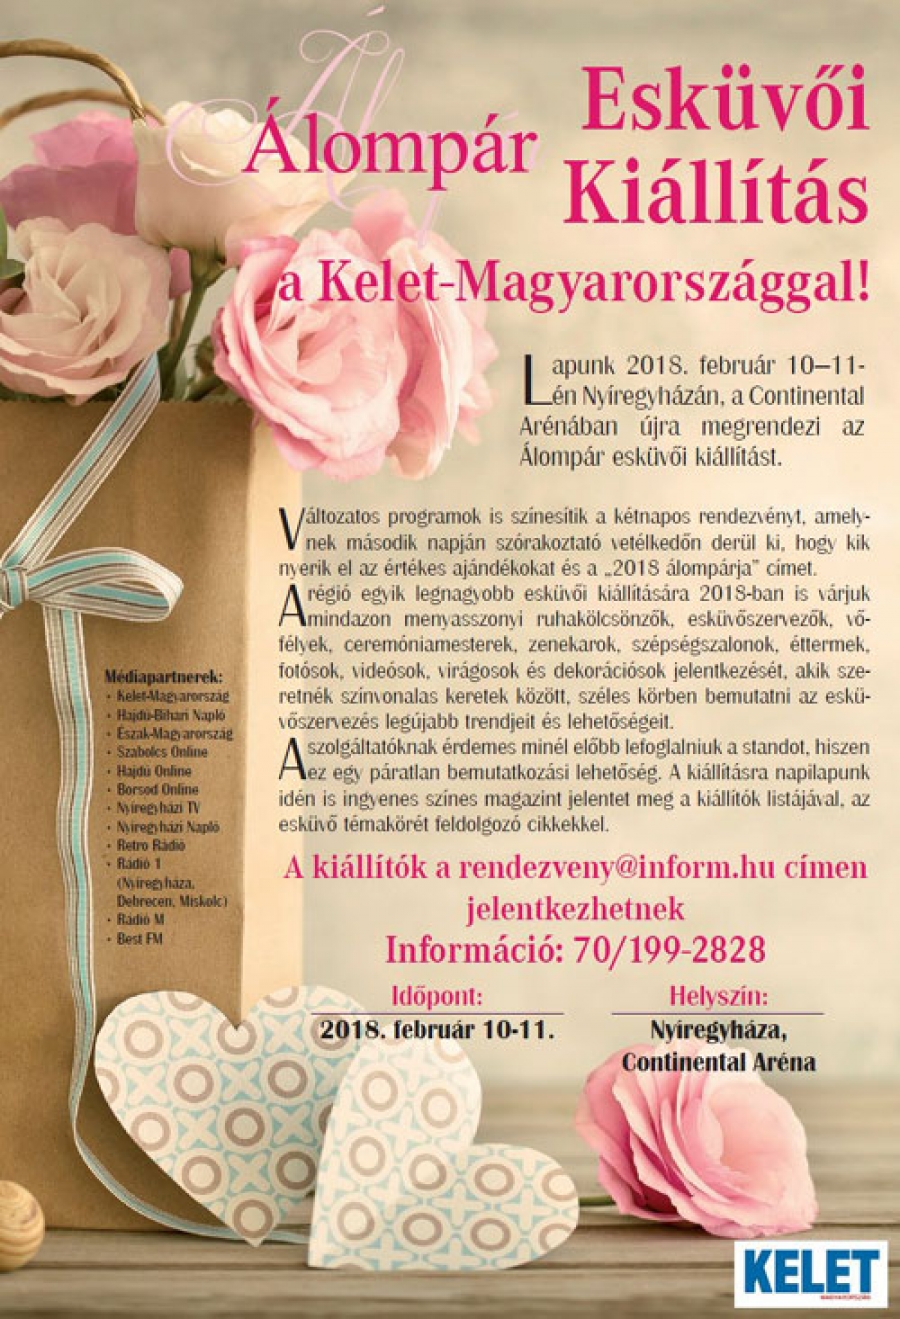 Álompár Esküvői Kiállítás a Kelet-Magyarországgal